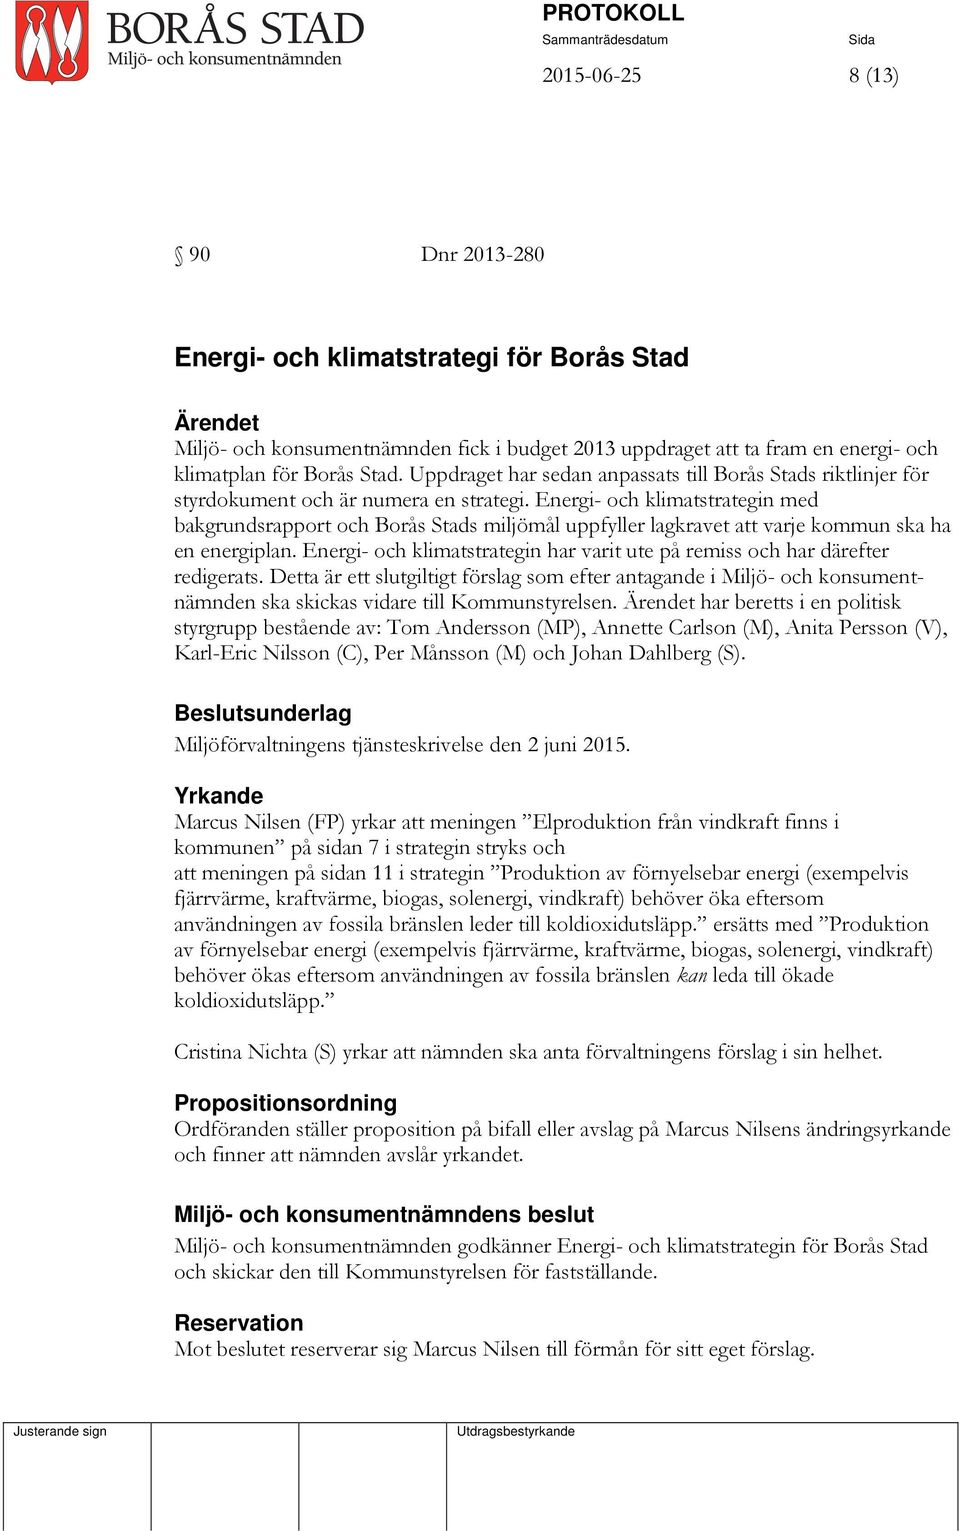 Energi- och klimatstrategin med bakgrundsrapport och Borås Stads miljömål uppfyller lagkravet att varje kommun ska ha en energiplan.